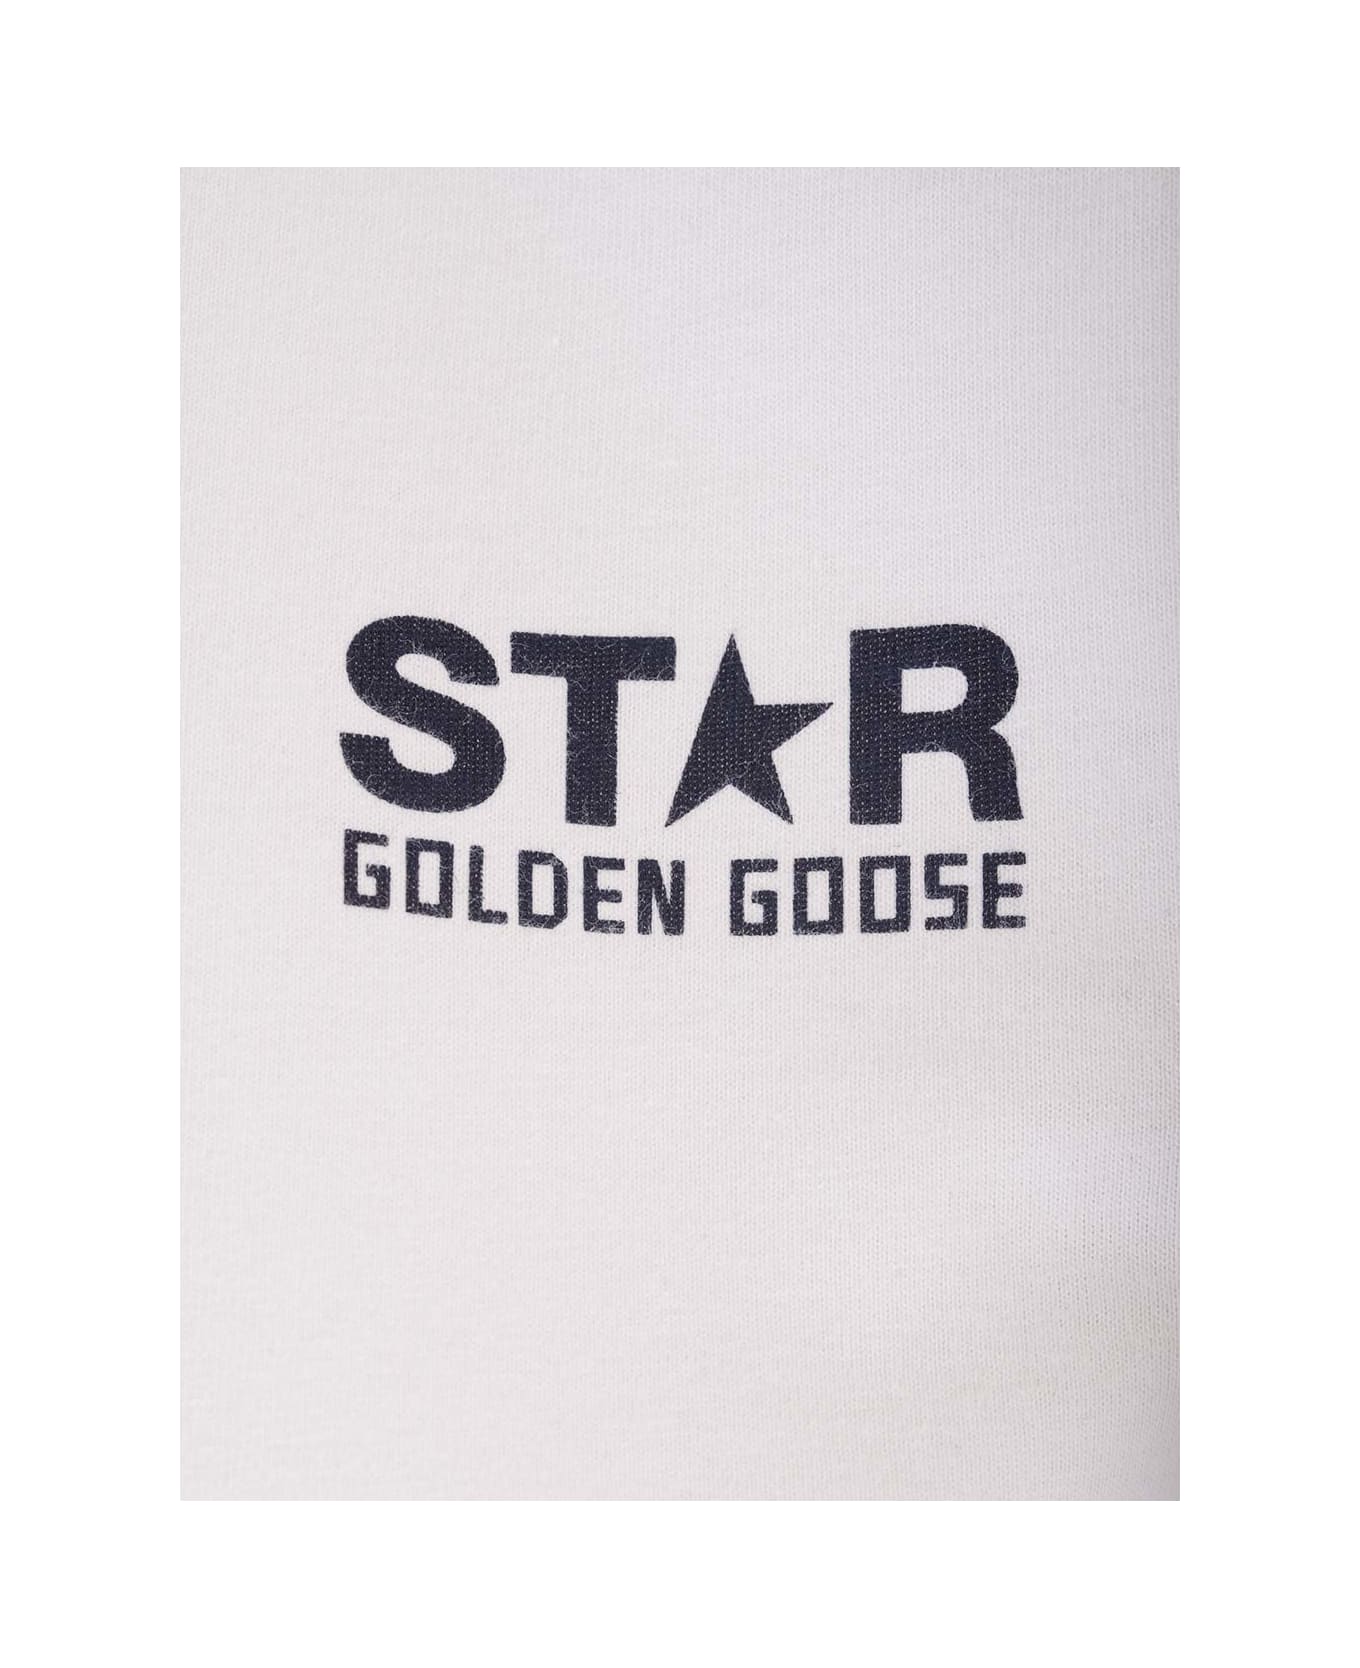 Golden Goose Slim Fit T-shirt - Cream Tシャツ